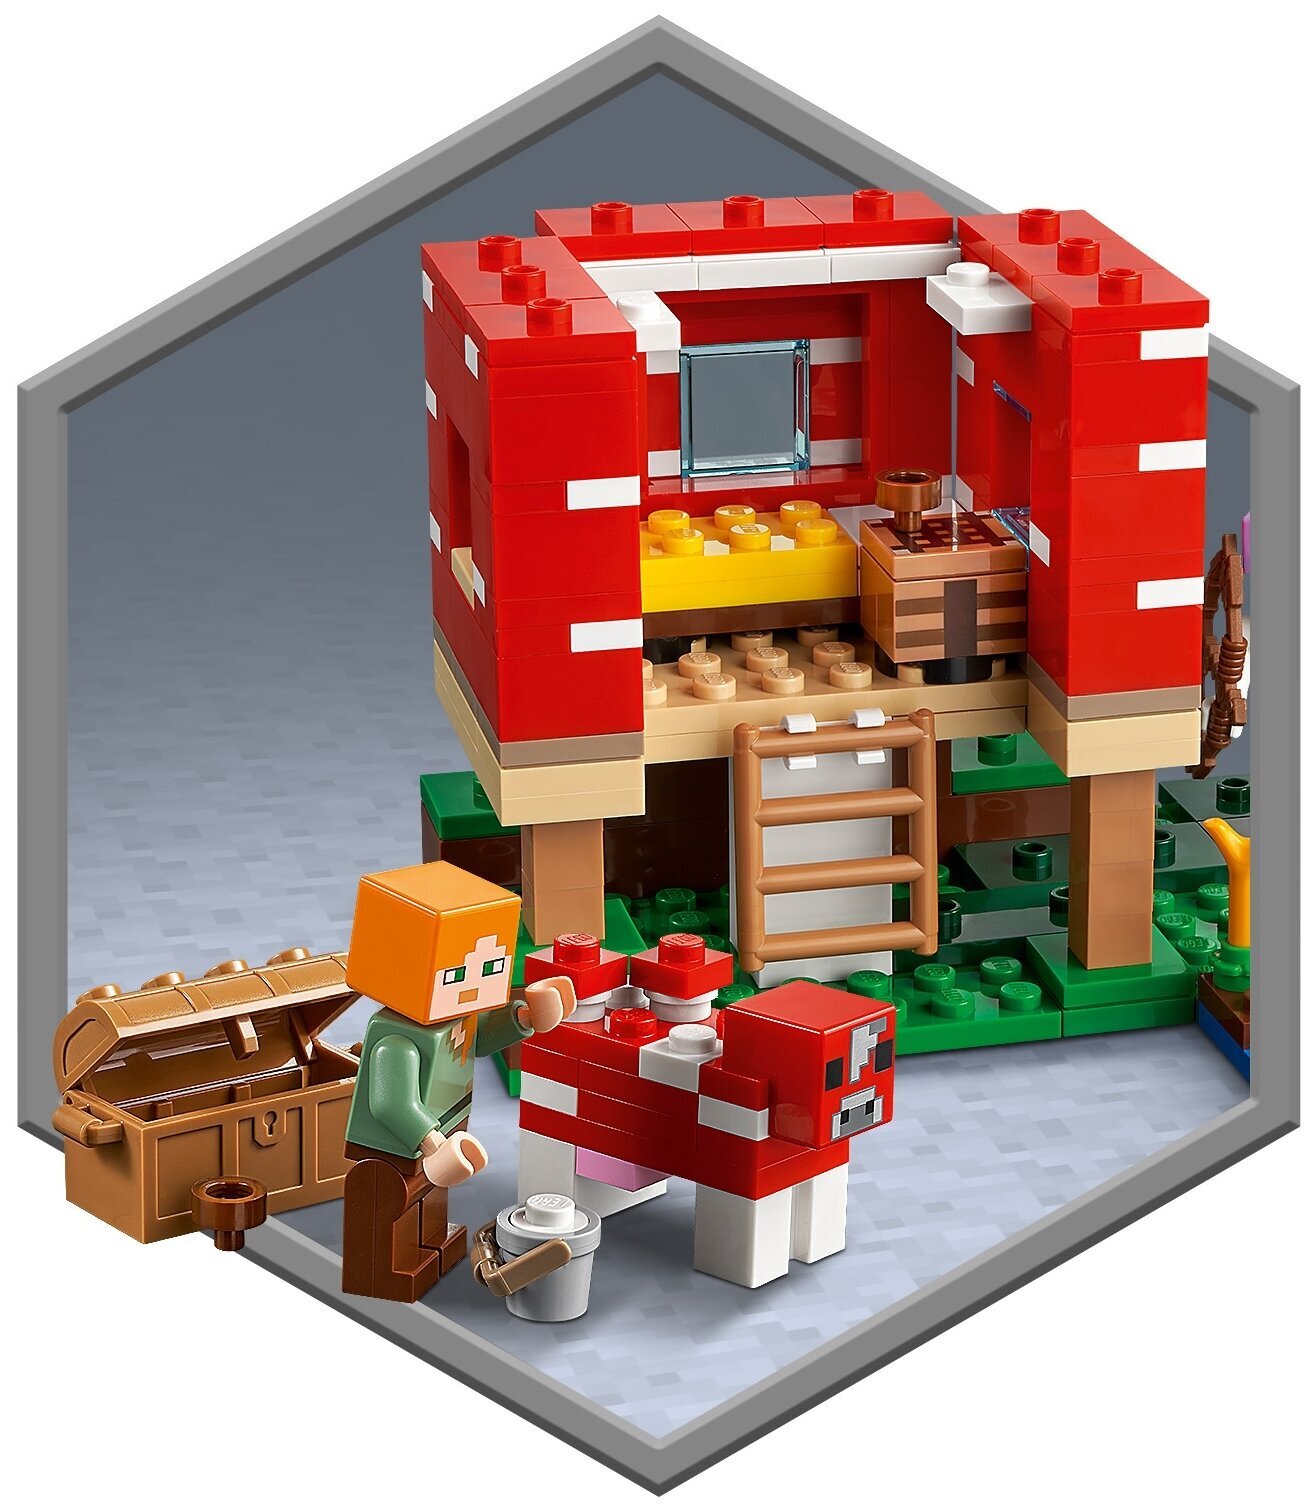 LEGO Дома, Лего Замки, Лего Дворцы цены, купить в интернет магазине paraskevat.ru